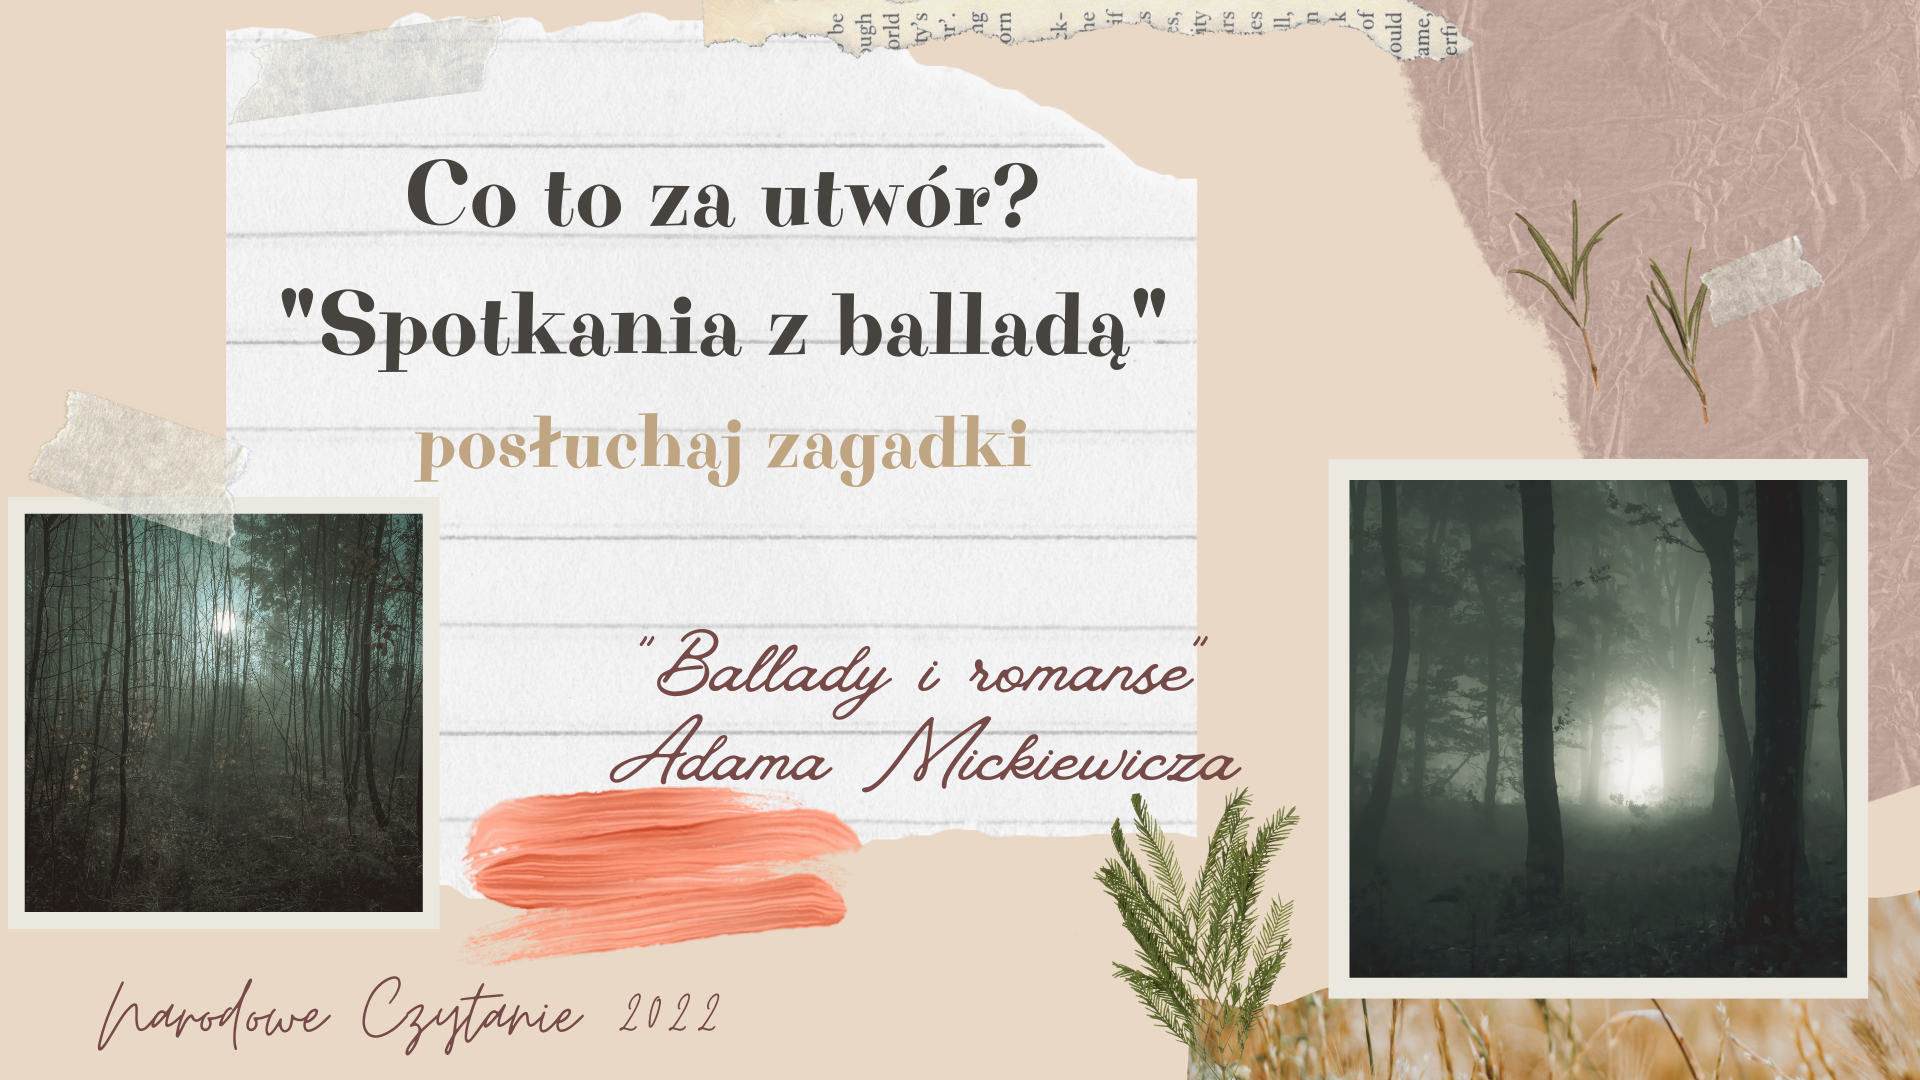 Narodowe Czytanie 2022 - Ballady i romanse: zagadki Spotkania z Balladą